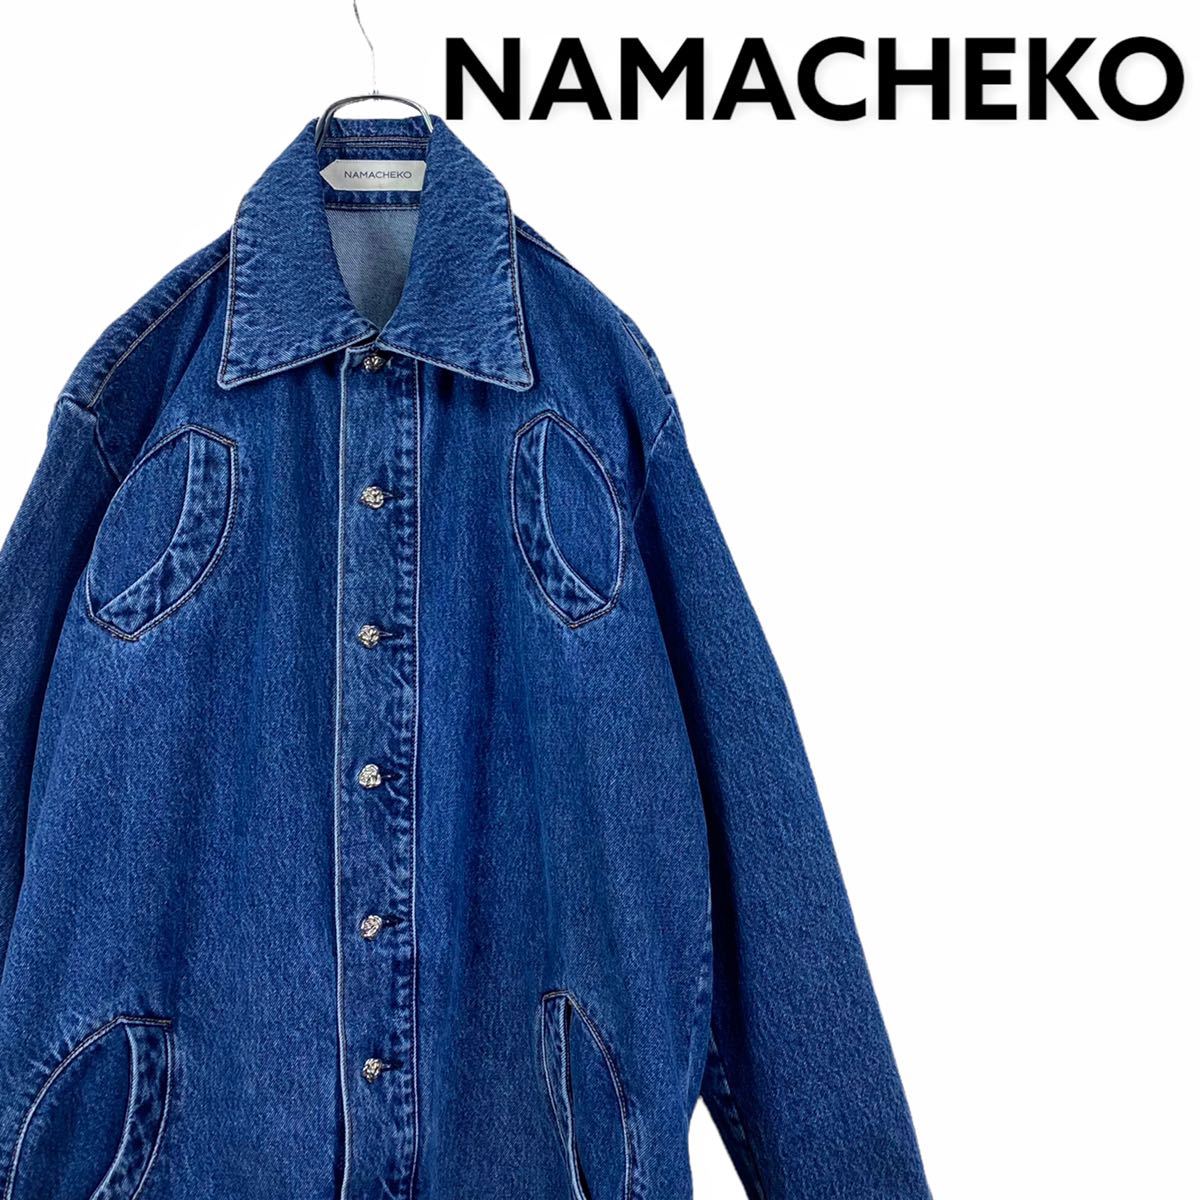 ○手数料無料!! Namacheko デニムジャケット ecousarecycling.com